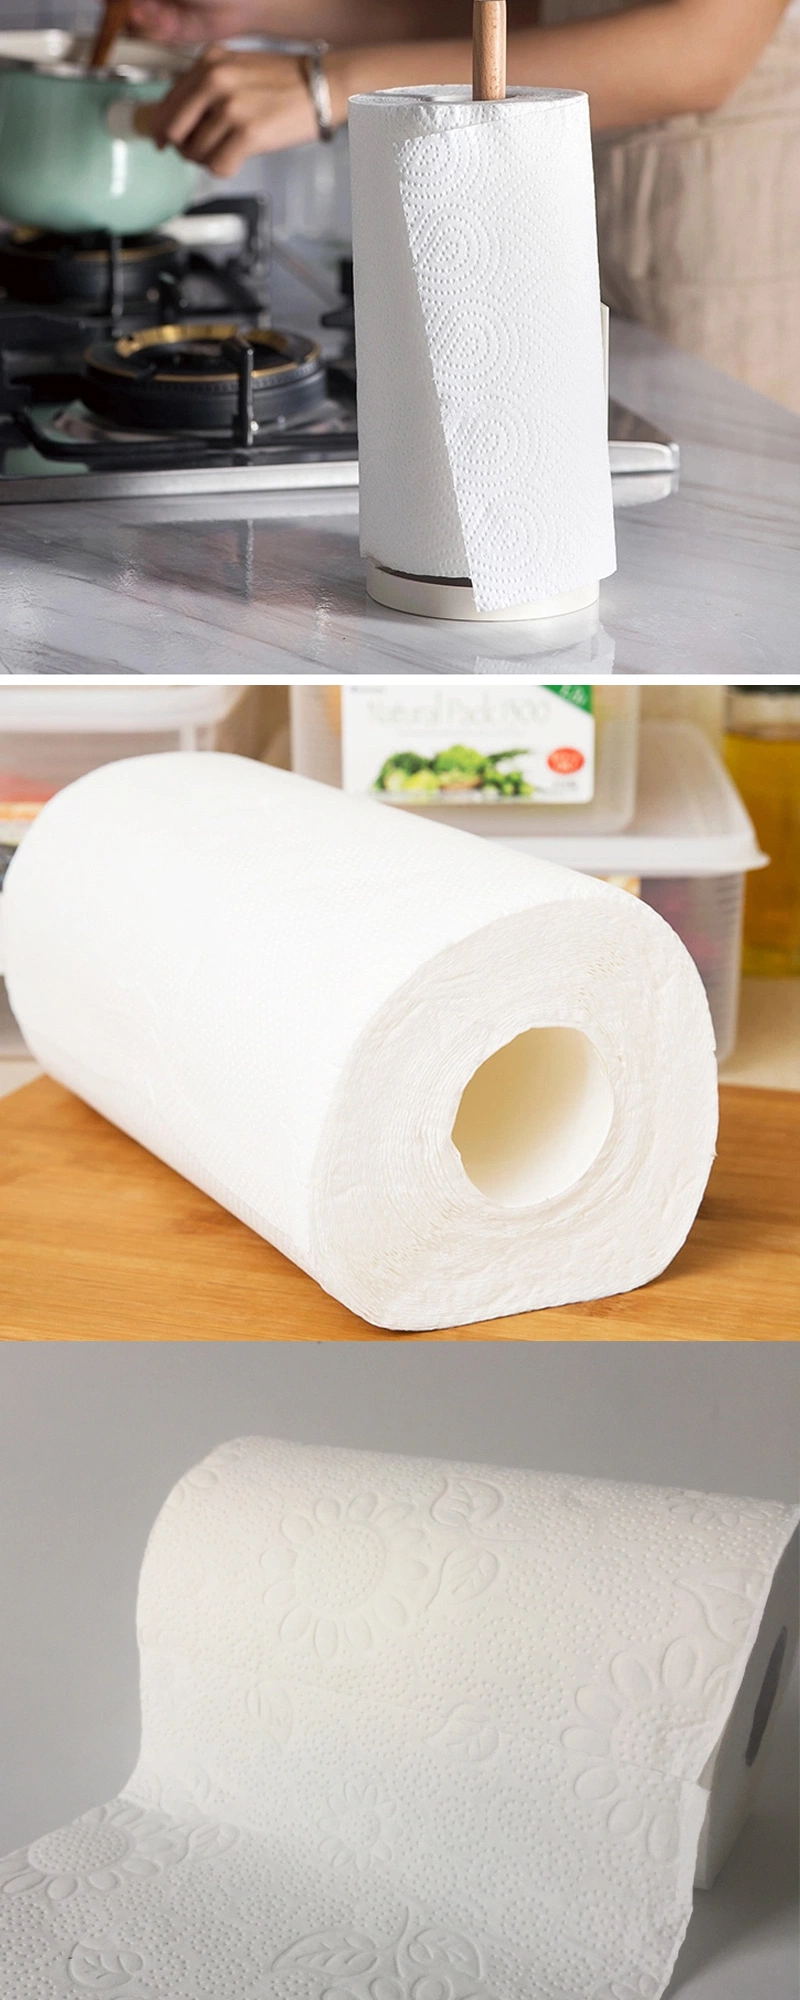 Wholesale Economic Kitchen Paper Roll Towel